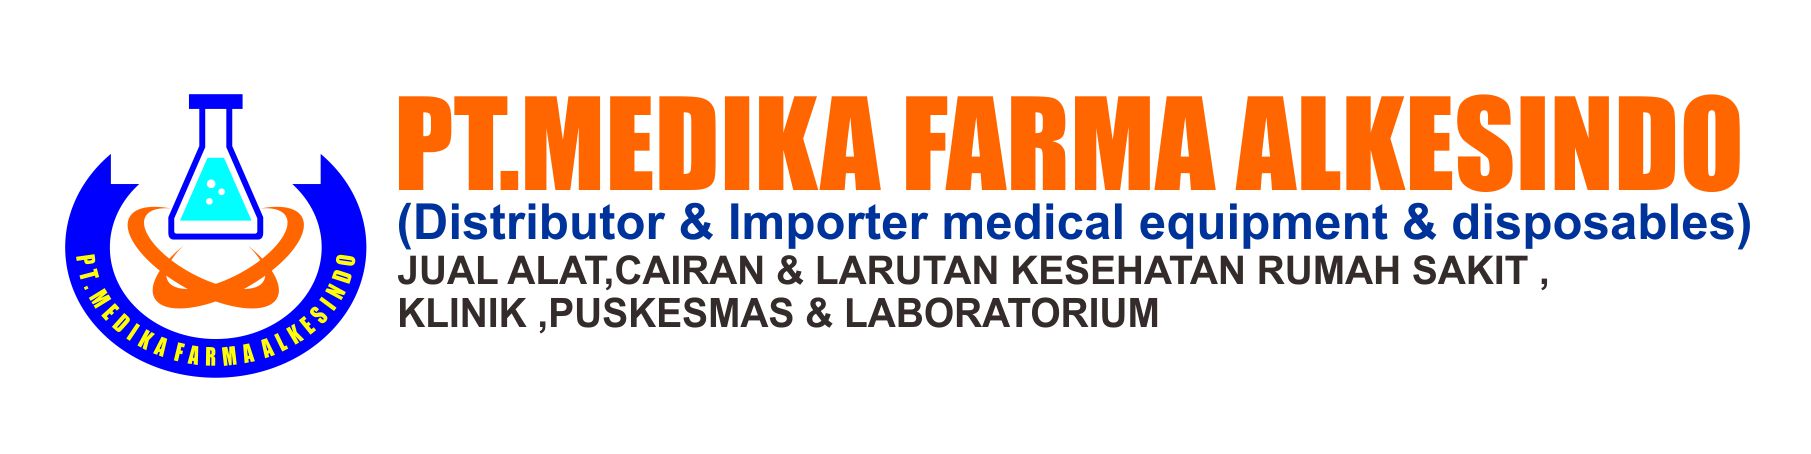 PT.Medika Farma Alkesindo